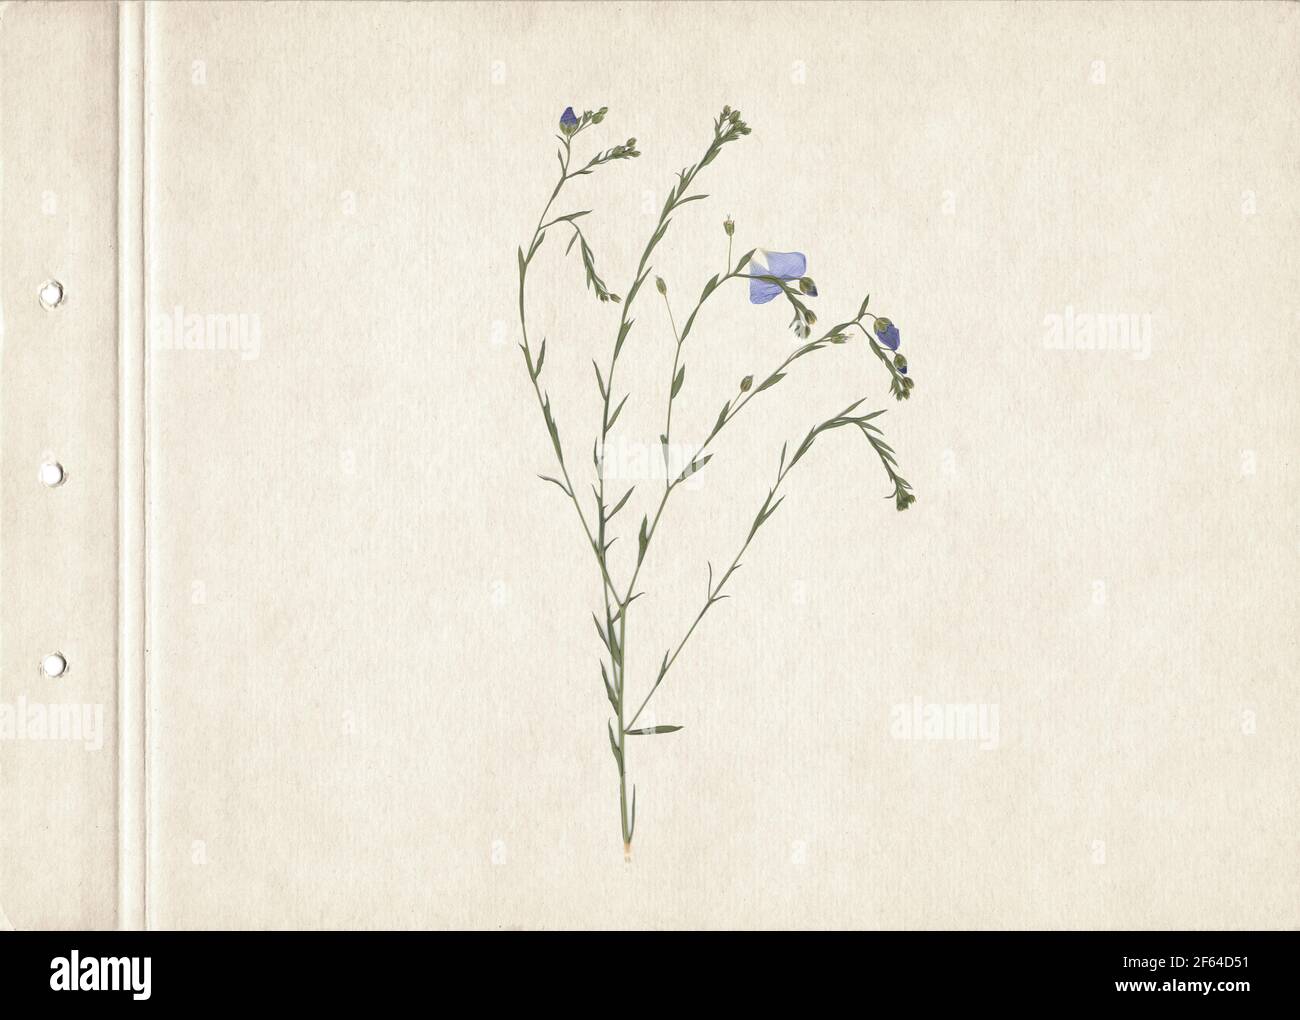 Herbes séchées et pressées. Image numérisée. Arrière-plan herbier vintage sur papier ancien. Composition verticale de l'herbe avec des fleurs bleues sur un carton. Banque D'Images